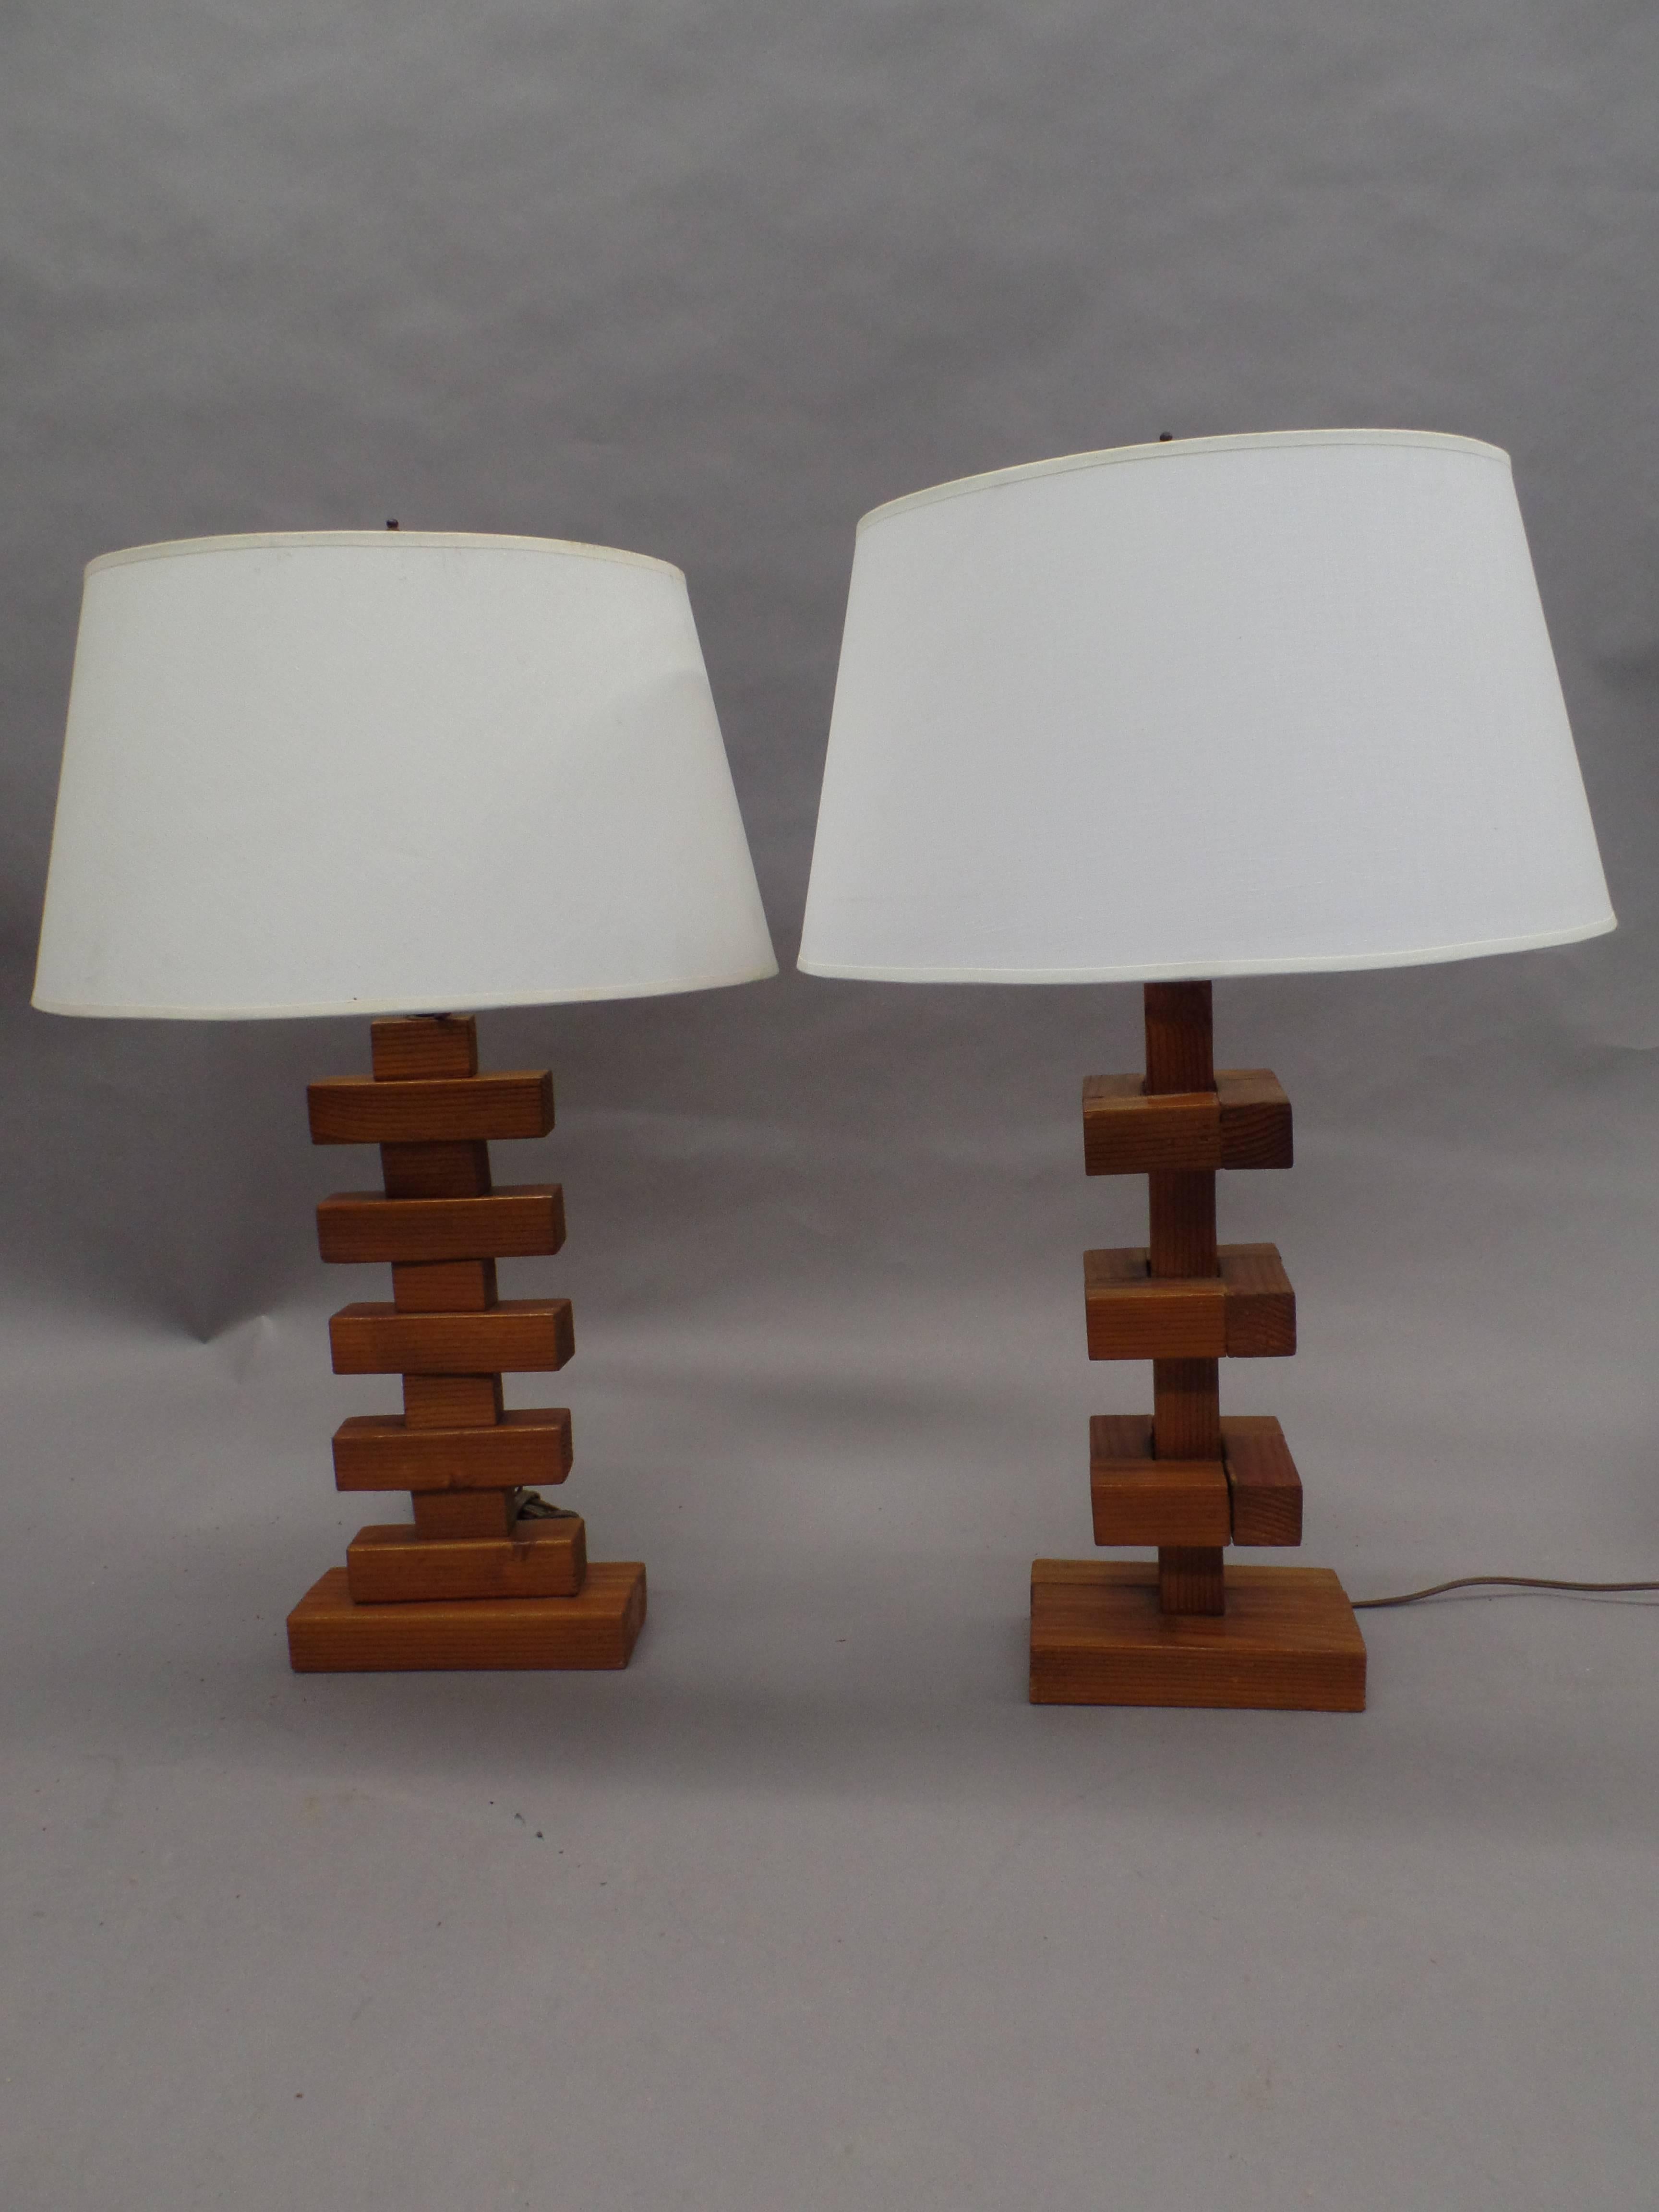 Seltenes Paar handgefertigter Holz-Tischlampen aus der Mitte des Jahrhunderts mit skulpturalen Sockeln, die konstruktivistische und kubistische Prinzipien verwenden. Jede Leuchte ist anders und ergänzt sich gegenseitig. Beide setzen auf mehrere sich